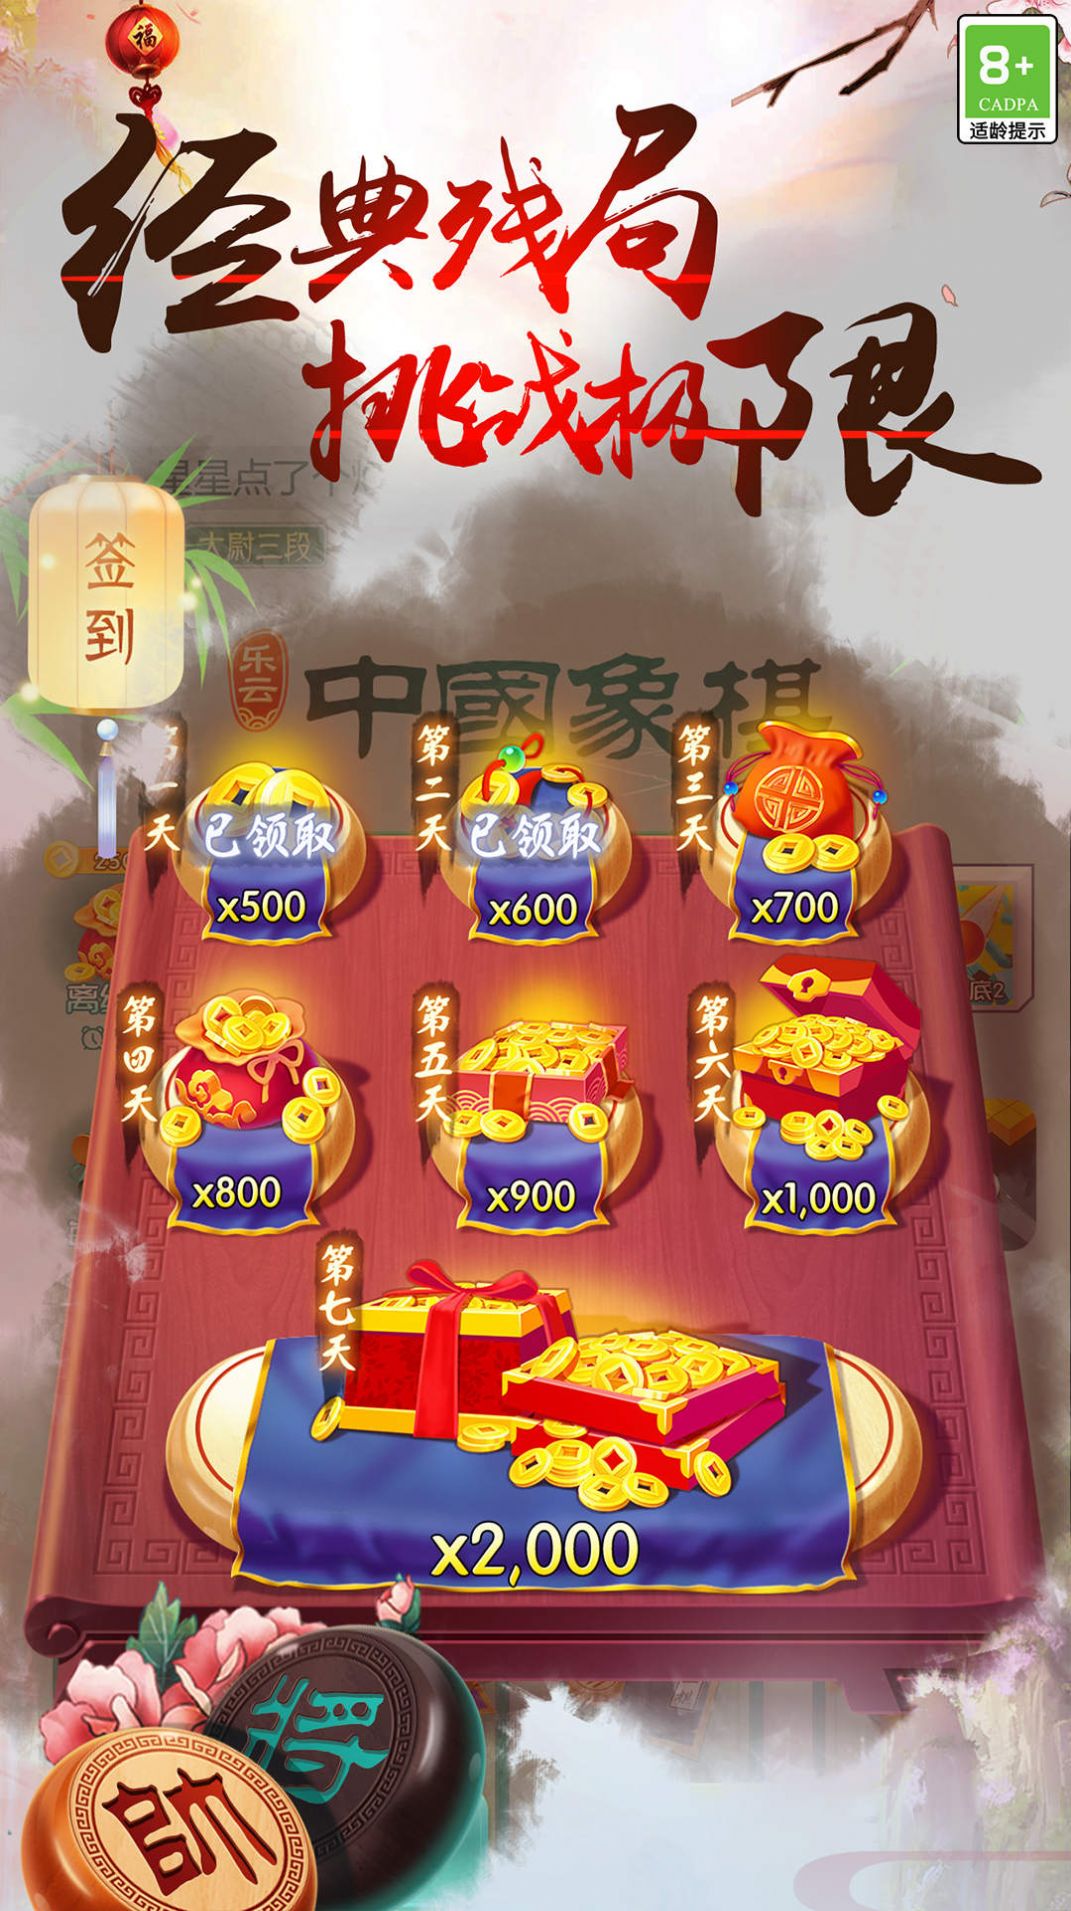 中国象棋之战下载安装最新版手游app截图